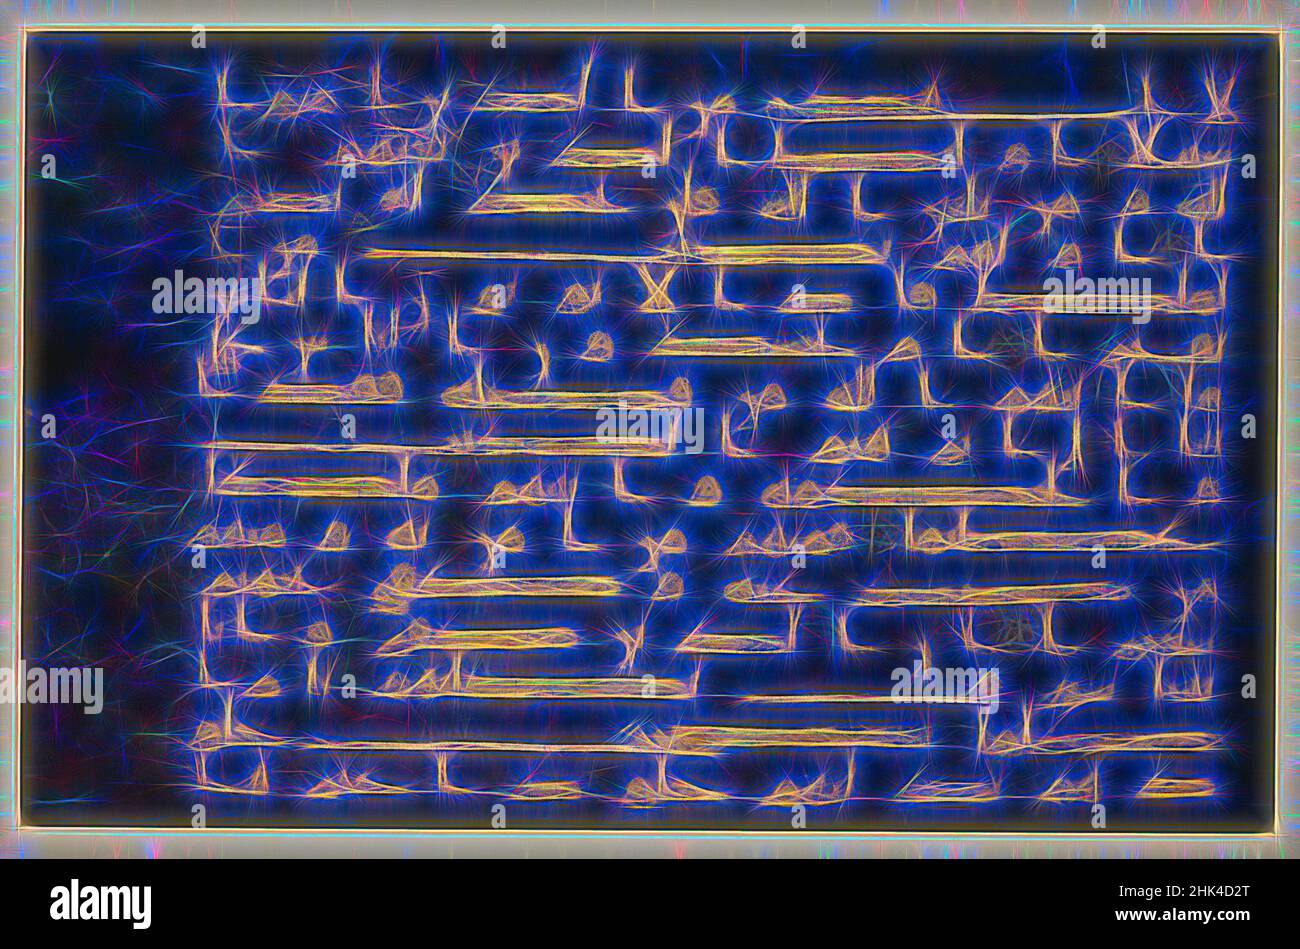 Inspiré par Folio du Qur'an 'Bleu', encre, or, et argent, maintenant oxydé sur parchemin bleu, 9th-10th siècle, 11 3/16 x 15 po, 28,4 x 38,1 cm, arabe, calligraphie, dévot, Saint, Islamique, Coran, mosquée, Coran, sura, Verset, repensé par Artotop. L'art classique réinventé avec une touche moderne. Conception de lumière chaleureuse et gaie, de luminosité et de rayonnement de lumière. La photographie s'inspire du surréalisme et du futurisme, embrassant l'énergie dynamique de la technologie moderne, du mouvement, de la vitesse et révolutionne la culture Banque D'Images